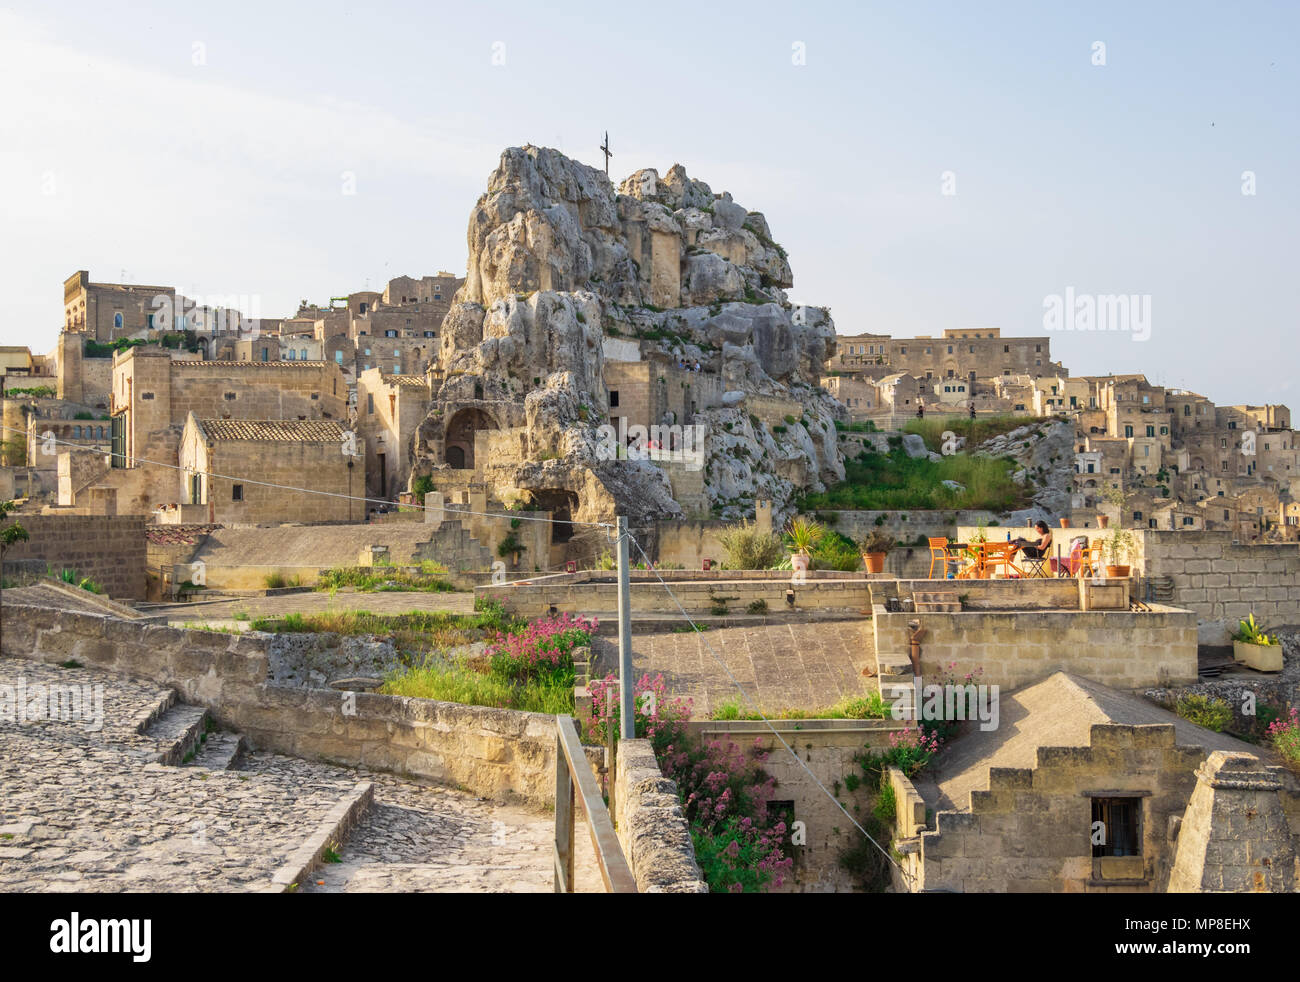 Matera (Basilicate) - Le centre historique de la merveilleuse ville de pierre du sud de l'Italie, une attraction touristique pour le fameux 'Sassi' vieille ville. Banque D'Images